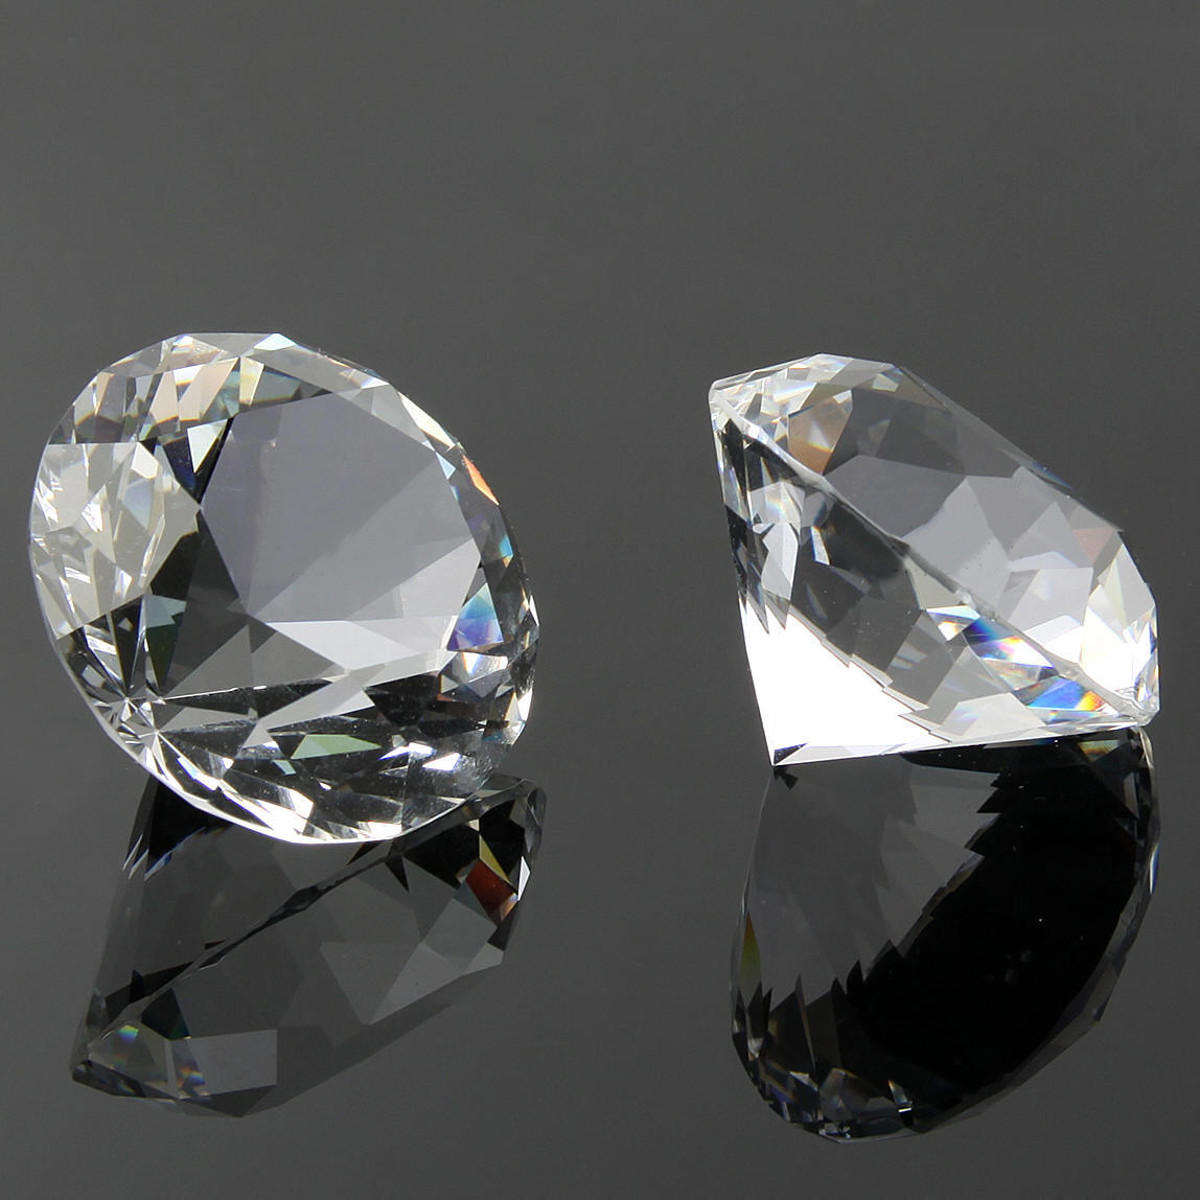 

60mm Big K9 Crystal Clear Diamond Glass Art Художественное оформление Украшения Креативные подарки